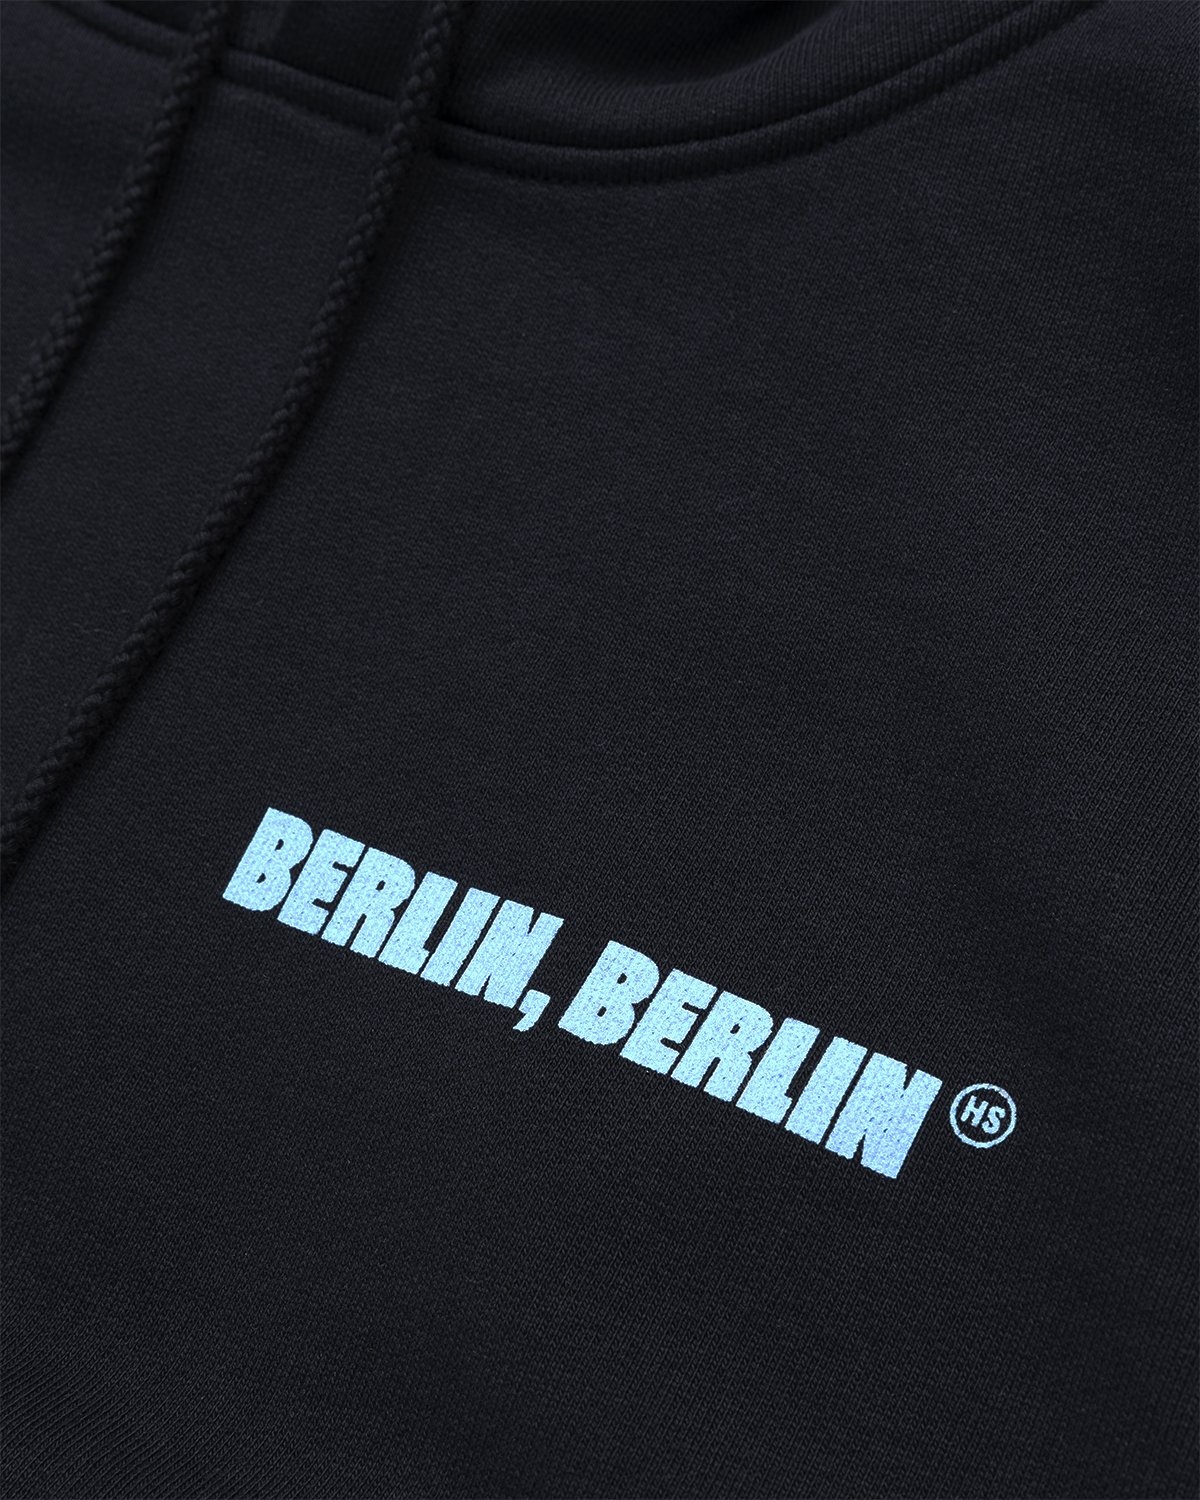 Highsnobiety – Berlin Berlin 2 Hoodie Black - Sweats - Black - Image 4